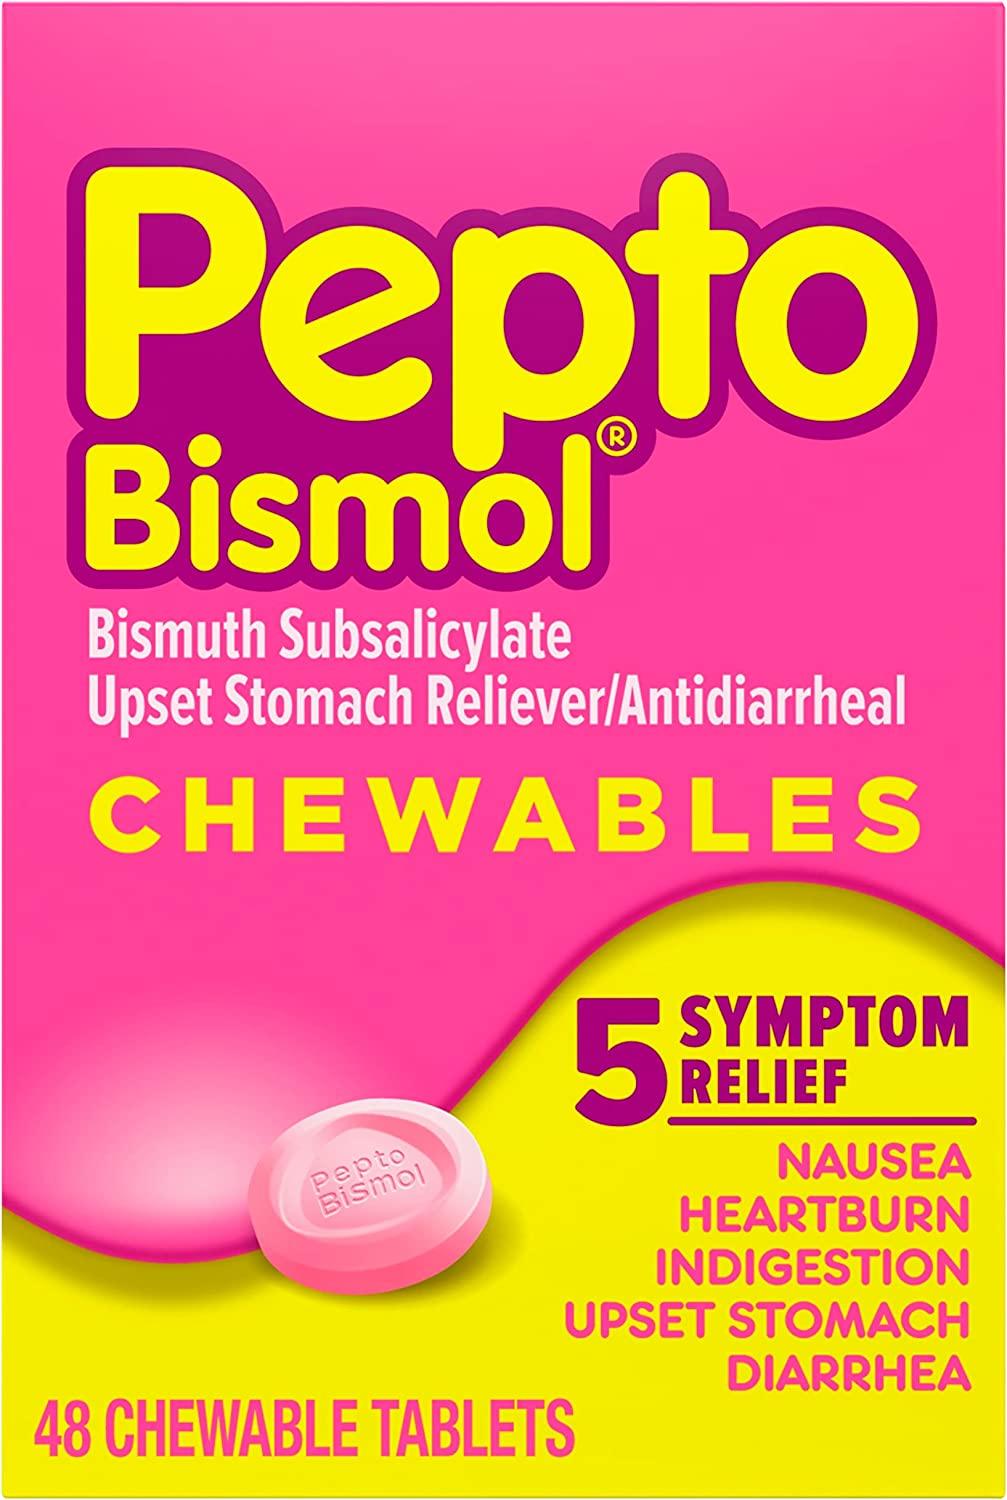 Pepto Bismol Chewables | Soulagement des Maux d'Estomac - mondialpharma.com